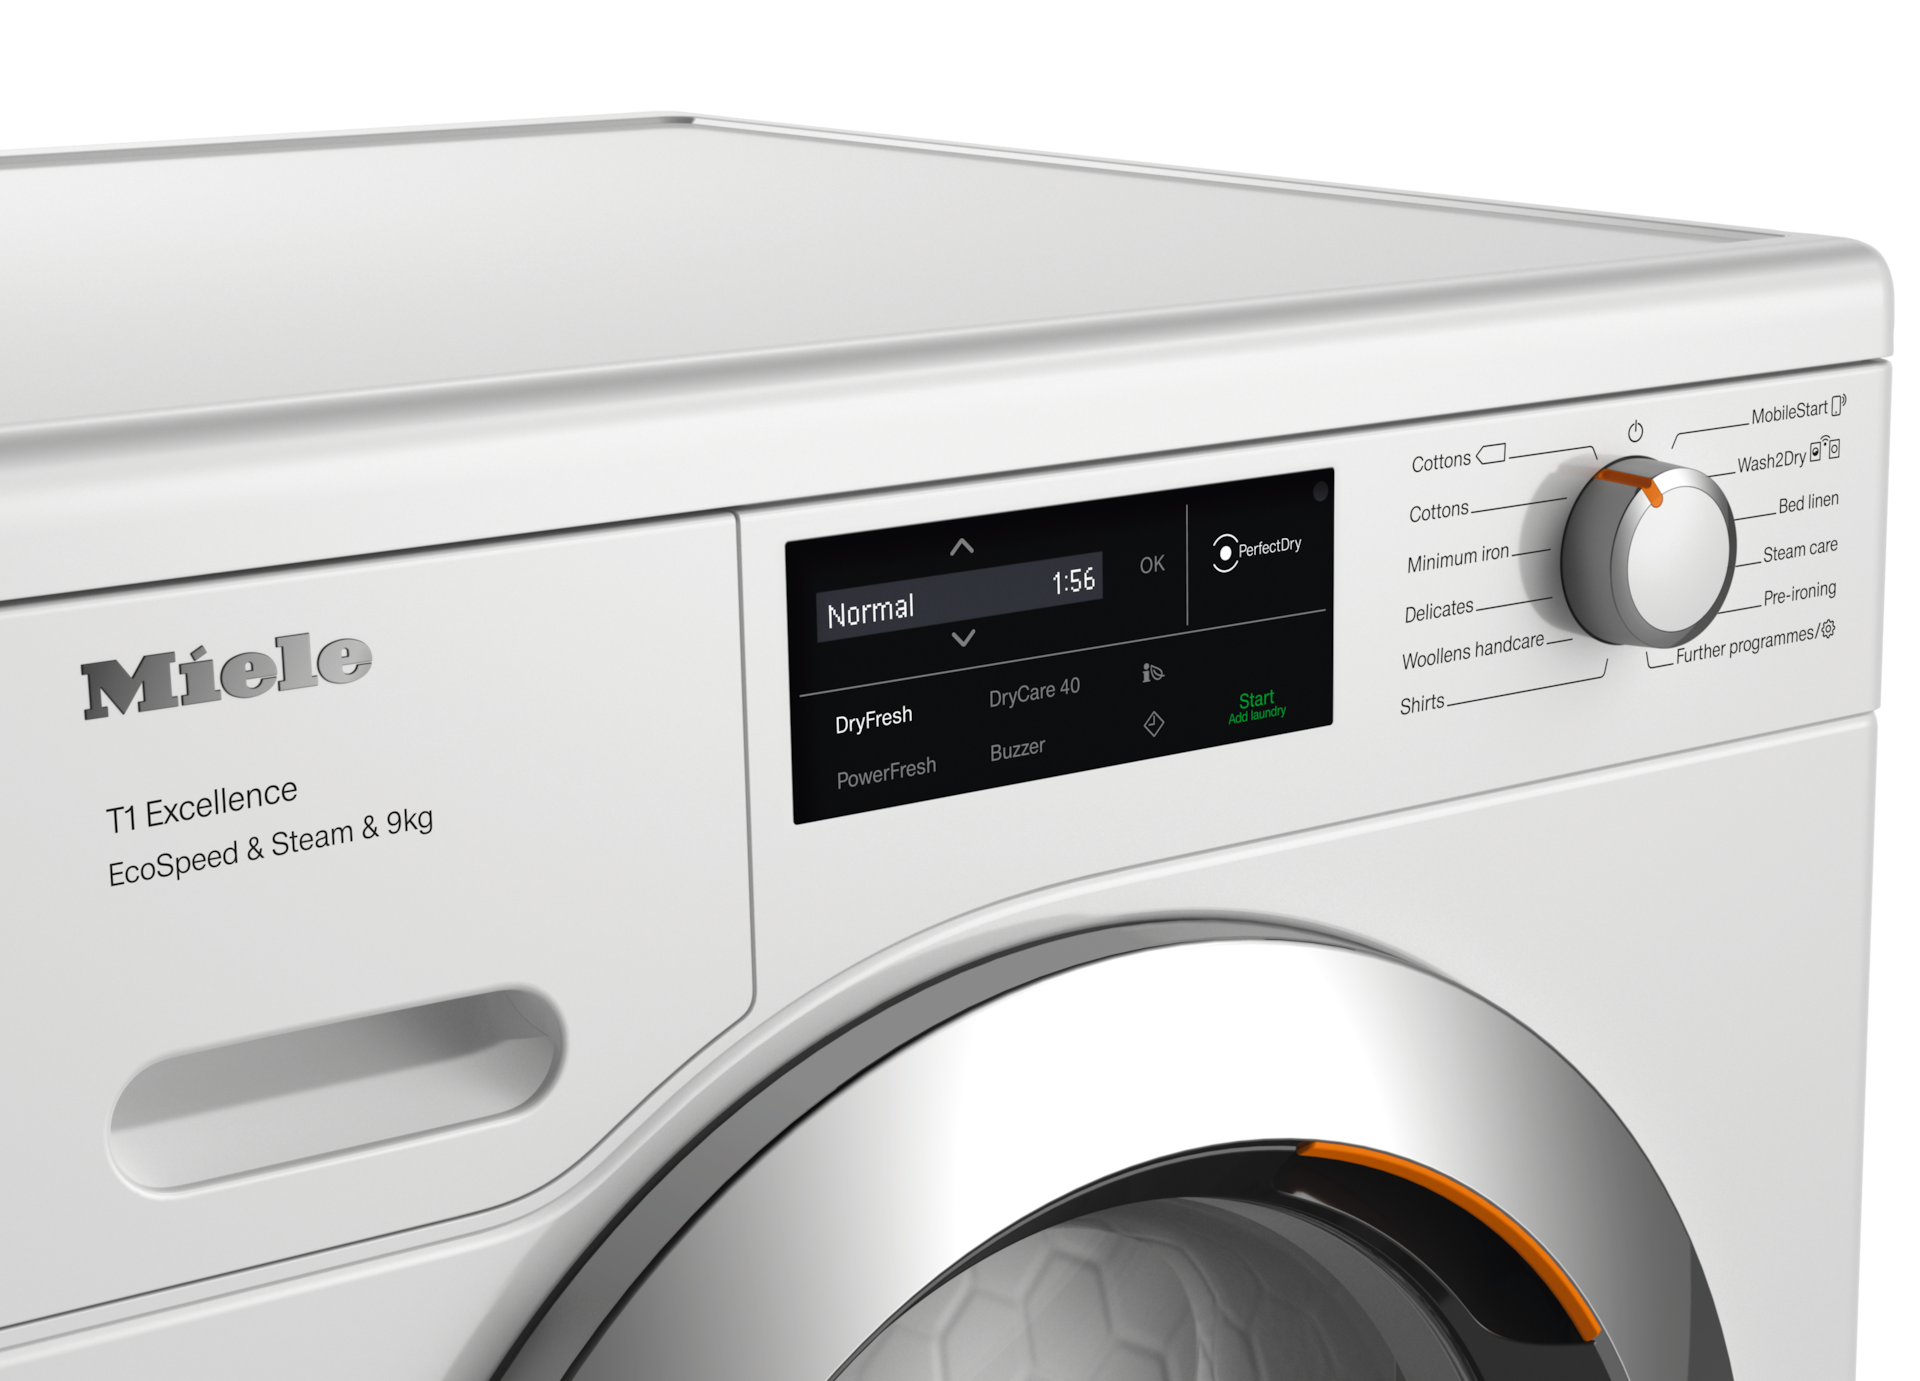 Tumble dryers - TEL785WP EcoSpeed&Steam&9kg Lotus white - 4